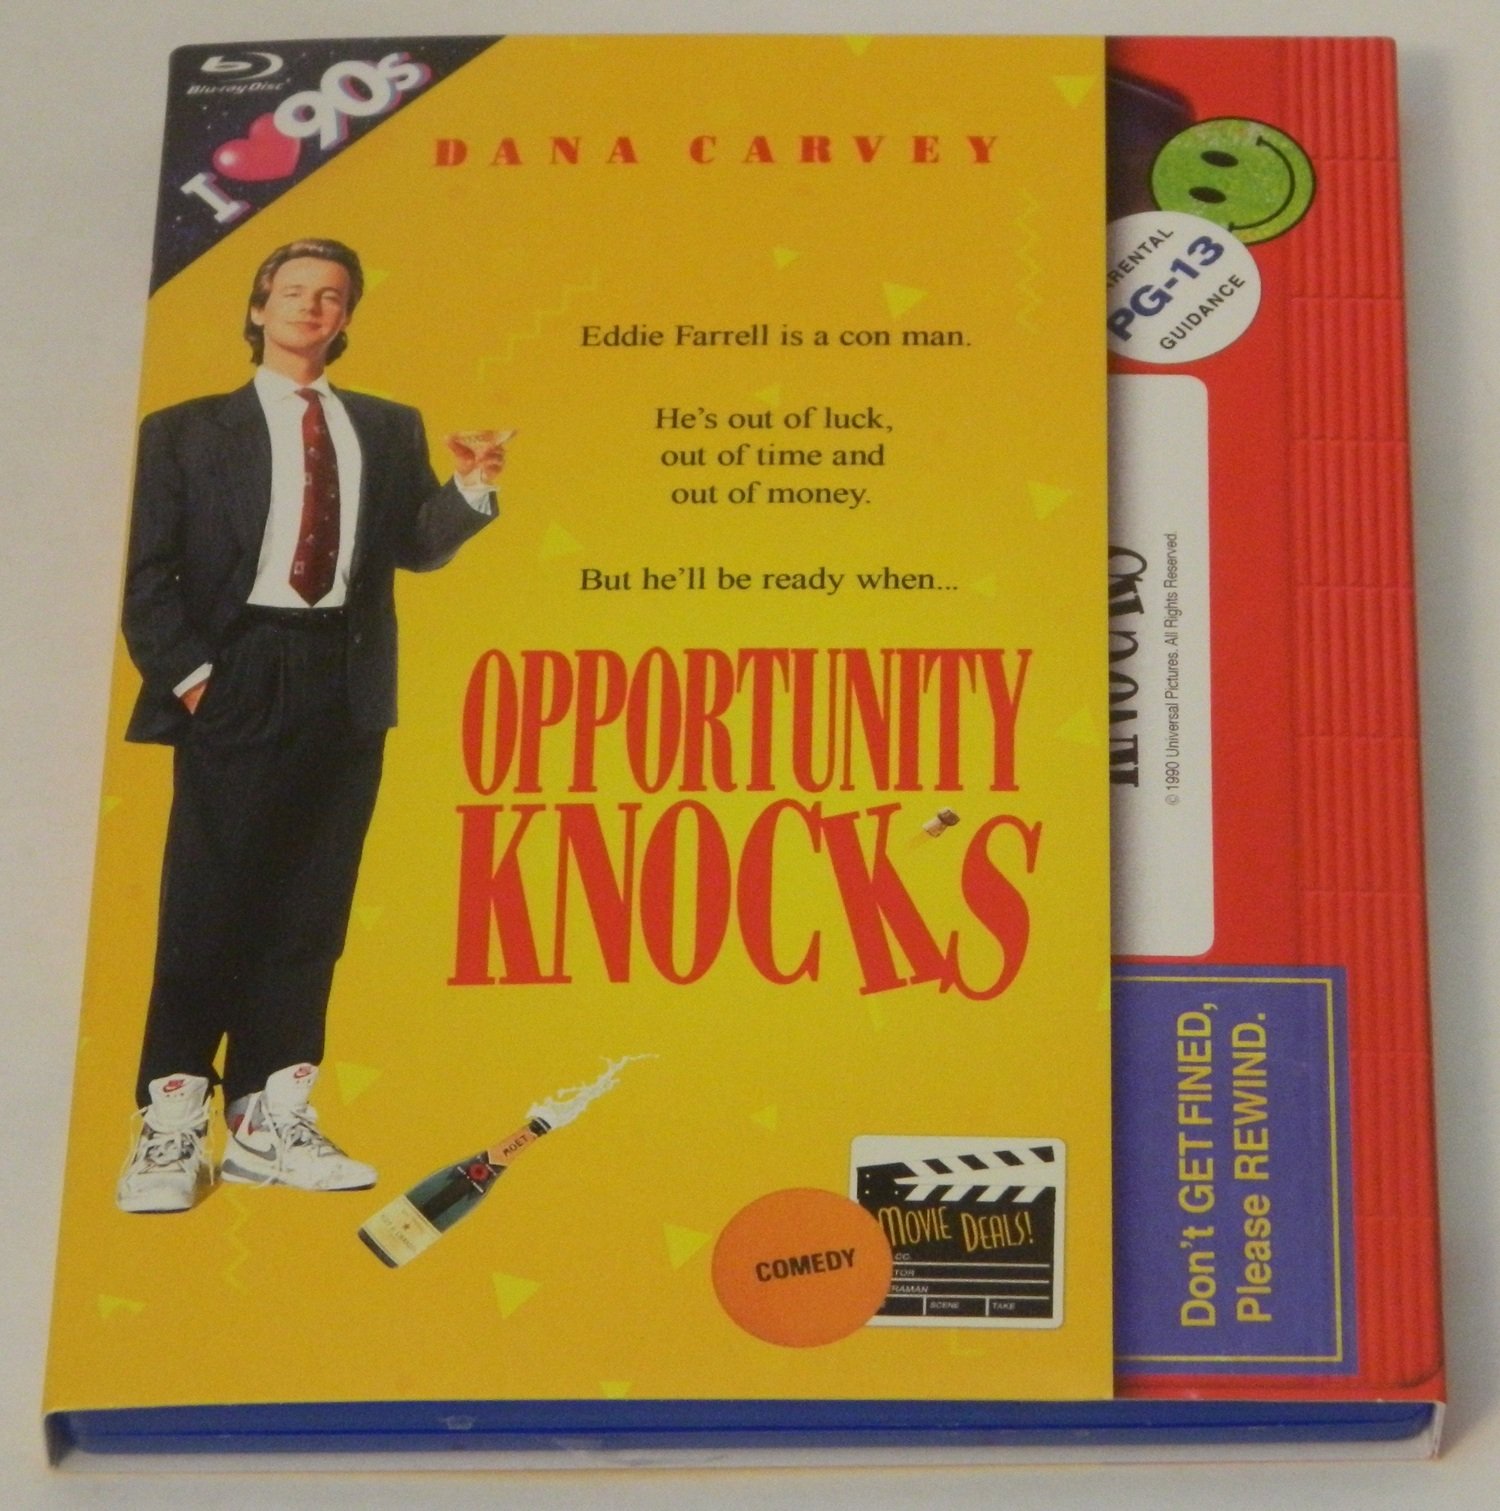 Opportunity Knocks Retro VHS Art Blu-ray